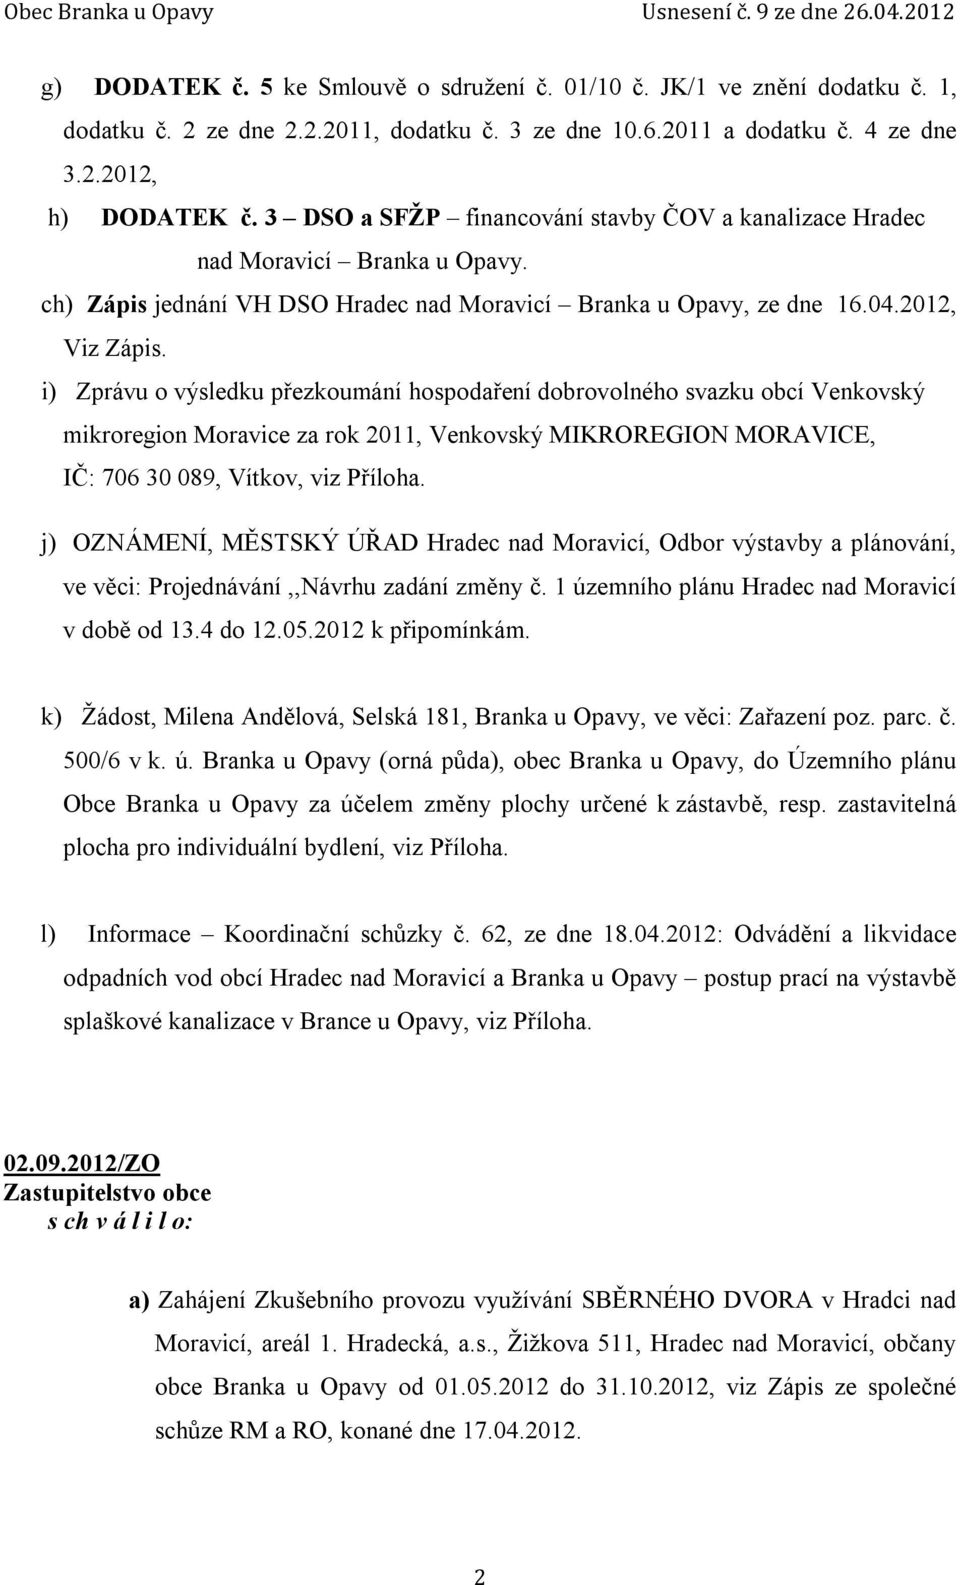 i) Zprávu o výsledku přezkoumání hospodaření dobrovolného svazku obcí Venkovský mikroregion Moravice za rok 2011, Venkovský MIKROREGION MORAVICE, IČ: 706 30 089, Vítkov, viz Příloha.